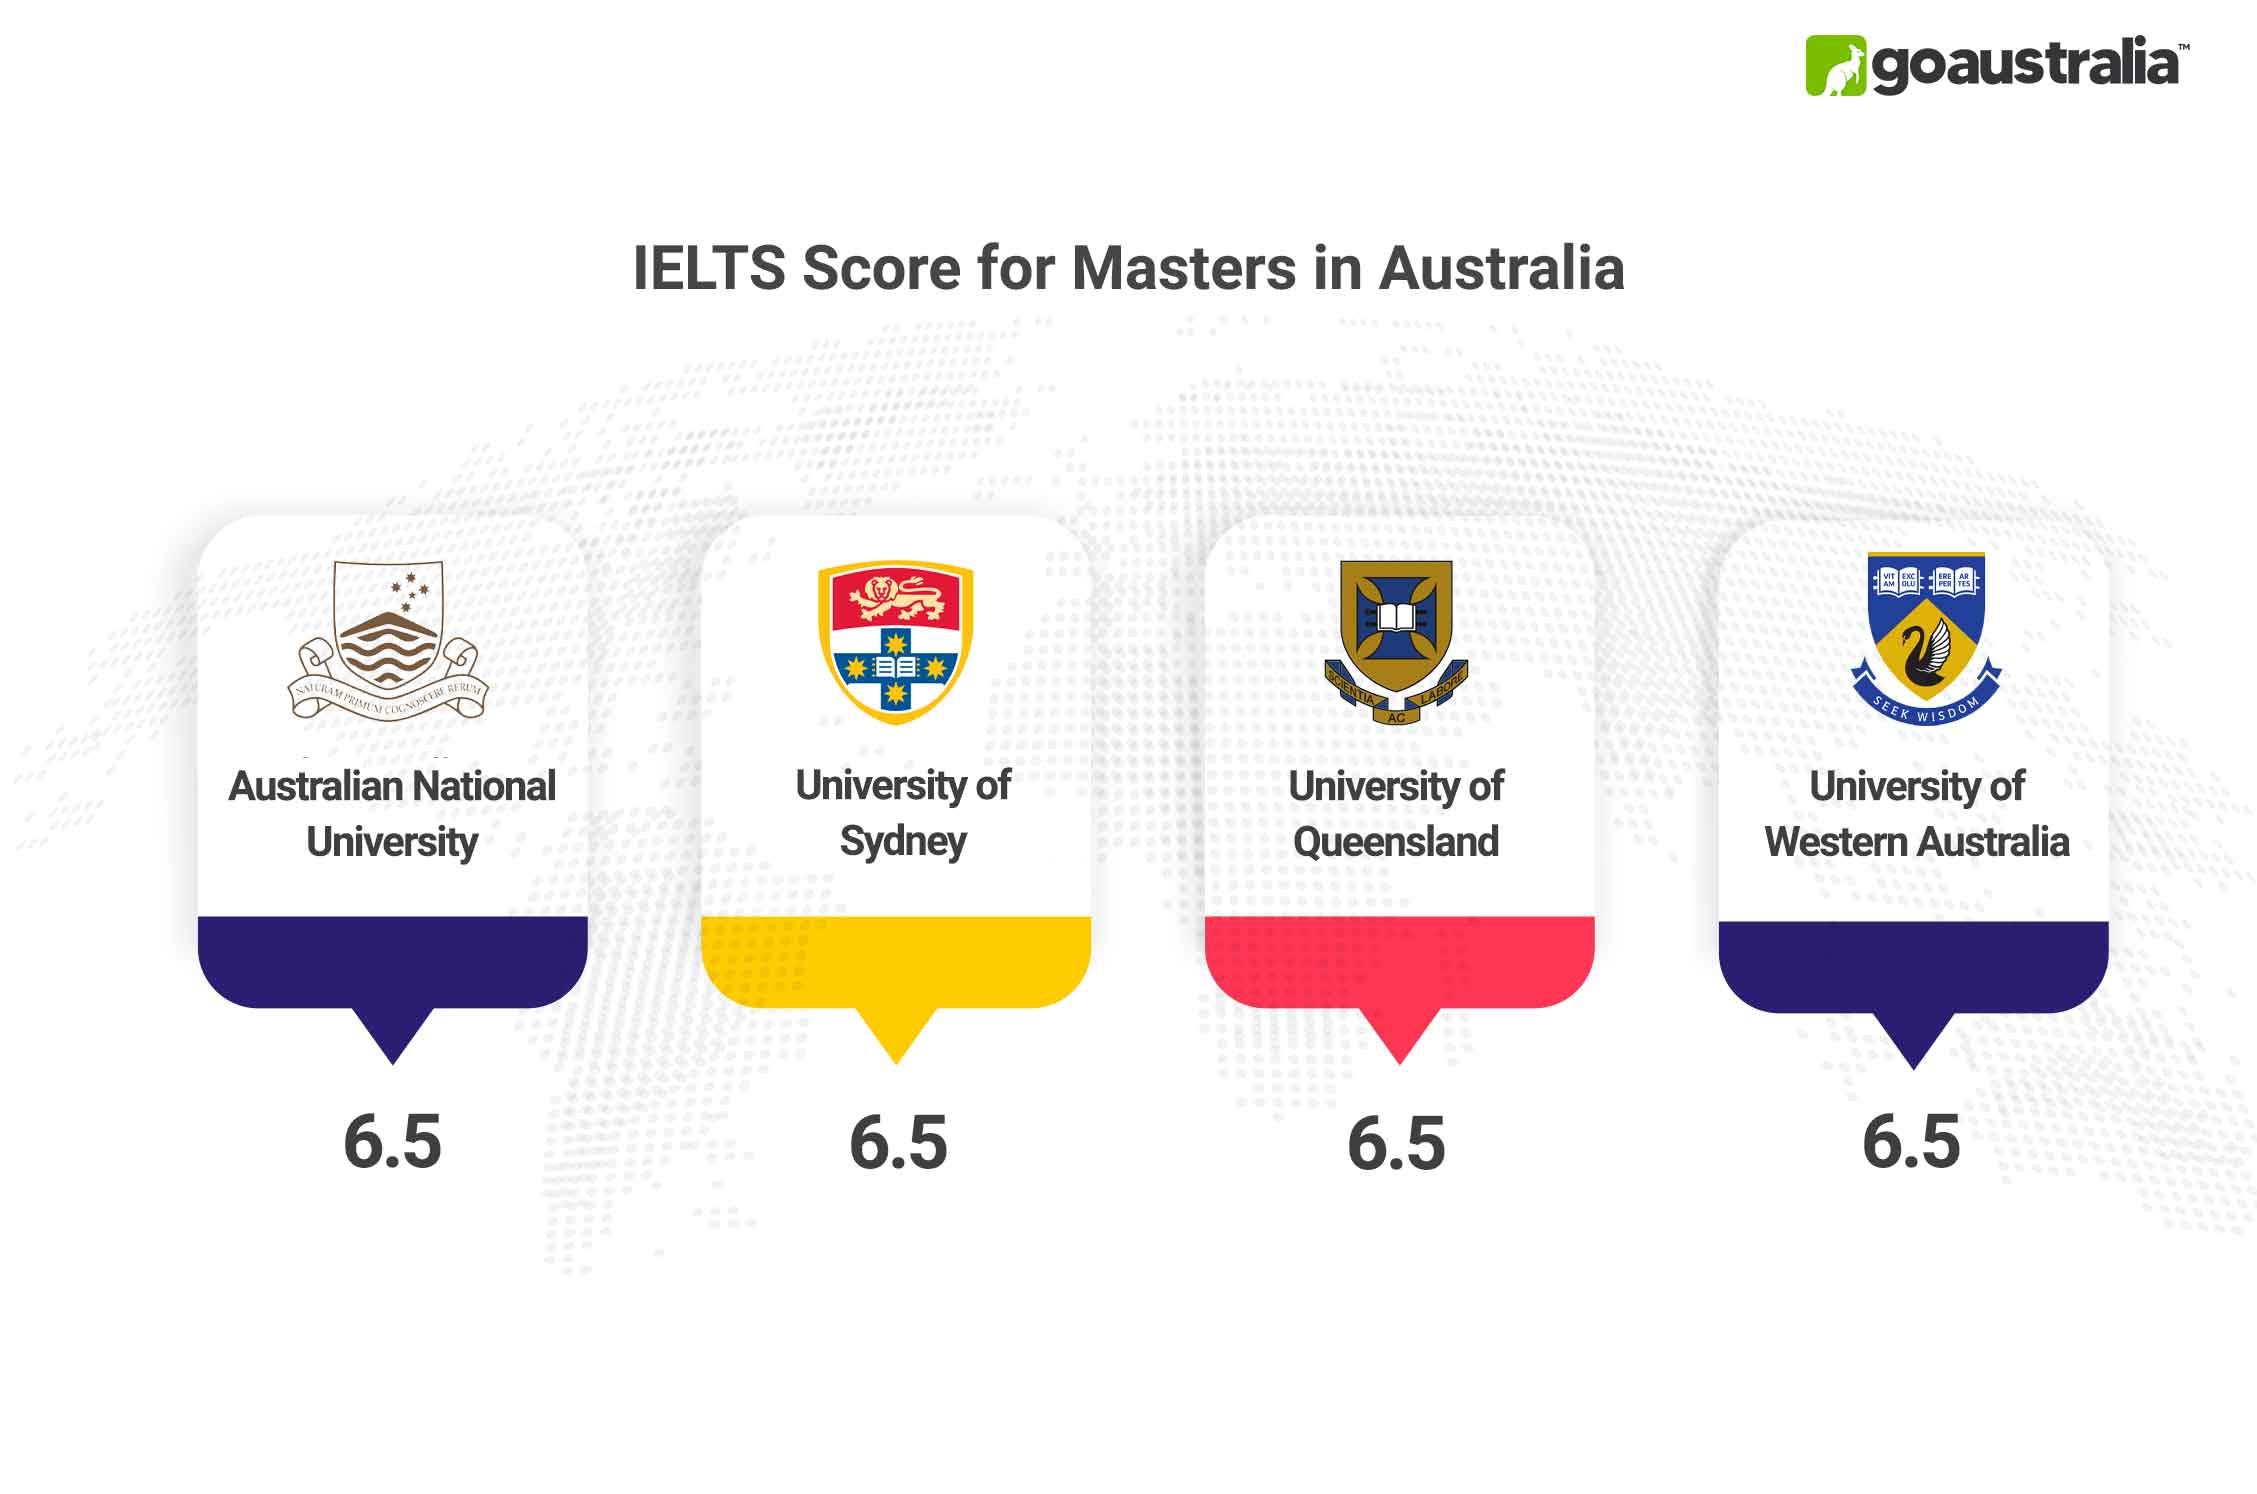 Masters in Australia IELTS Score